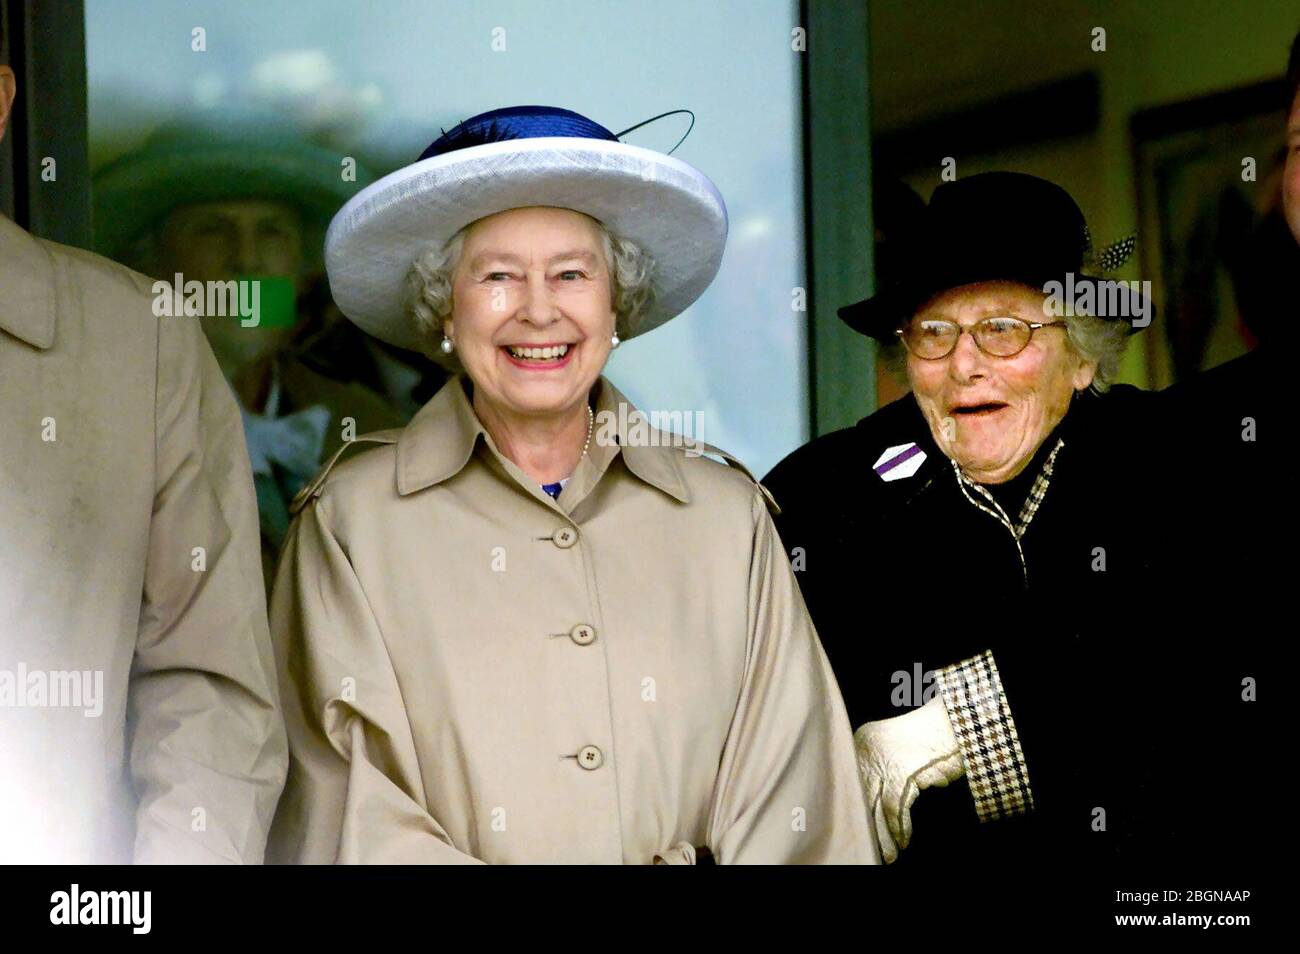 La Reine sourit comme une dame derrière montre surprise lors de sa visite dans le sud de l'Angleterre à Ardingly dans le cadre de son tournée de l'année du Jubilé d'or du pays . Juillet 2002 Banque D'Images